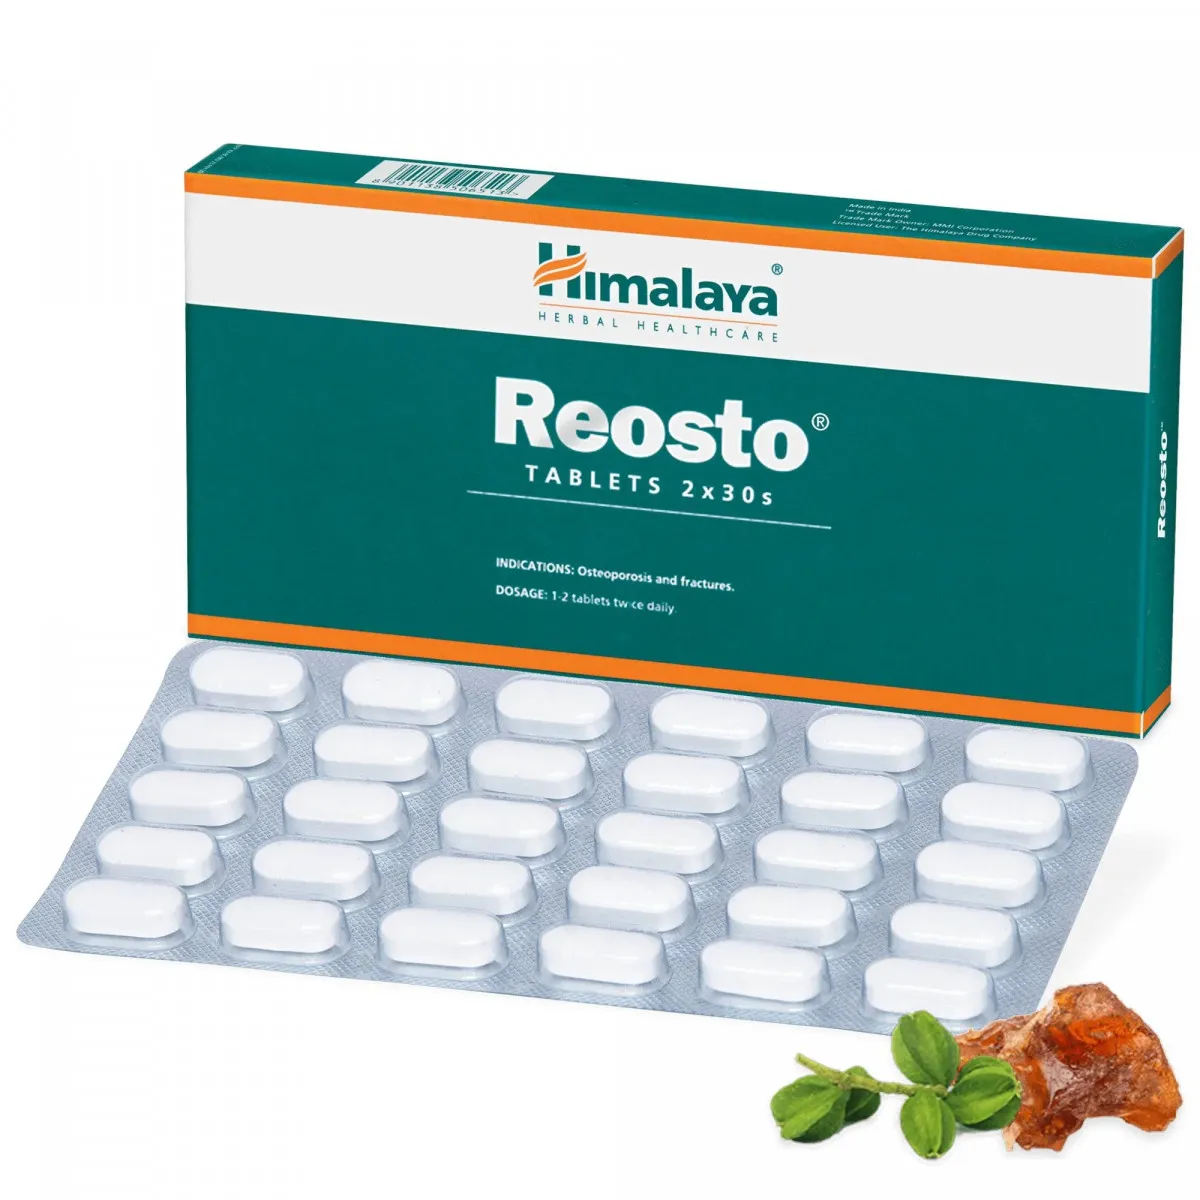 Препарат Реосто (Reosto) для укрепления костной ткани Himalaya#1